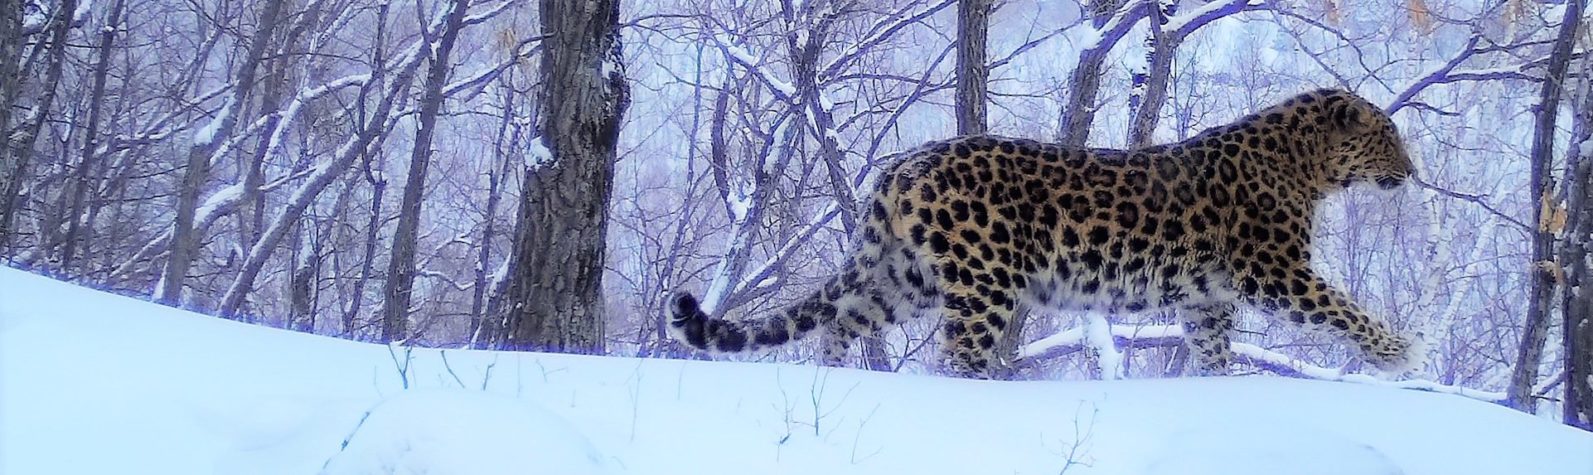 Monitoring Amur leopards: Dale Miquelle